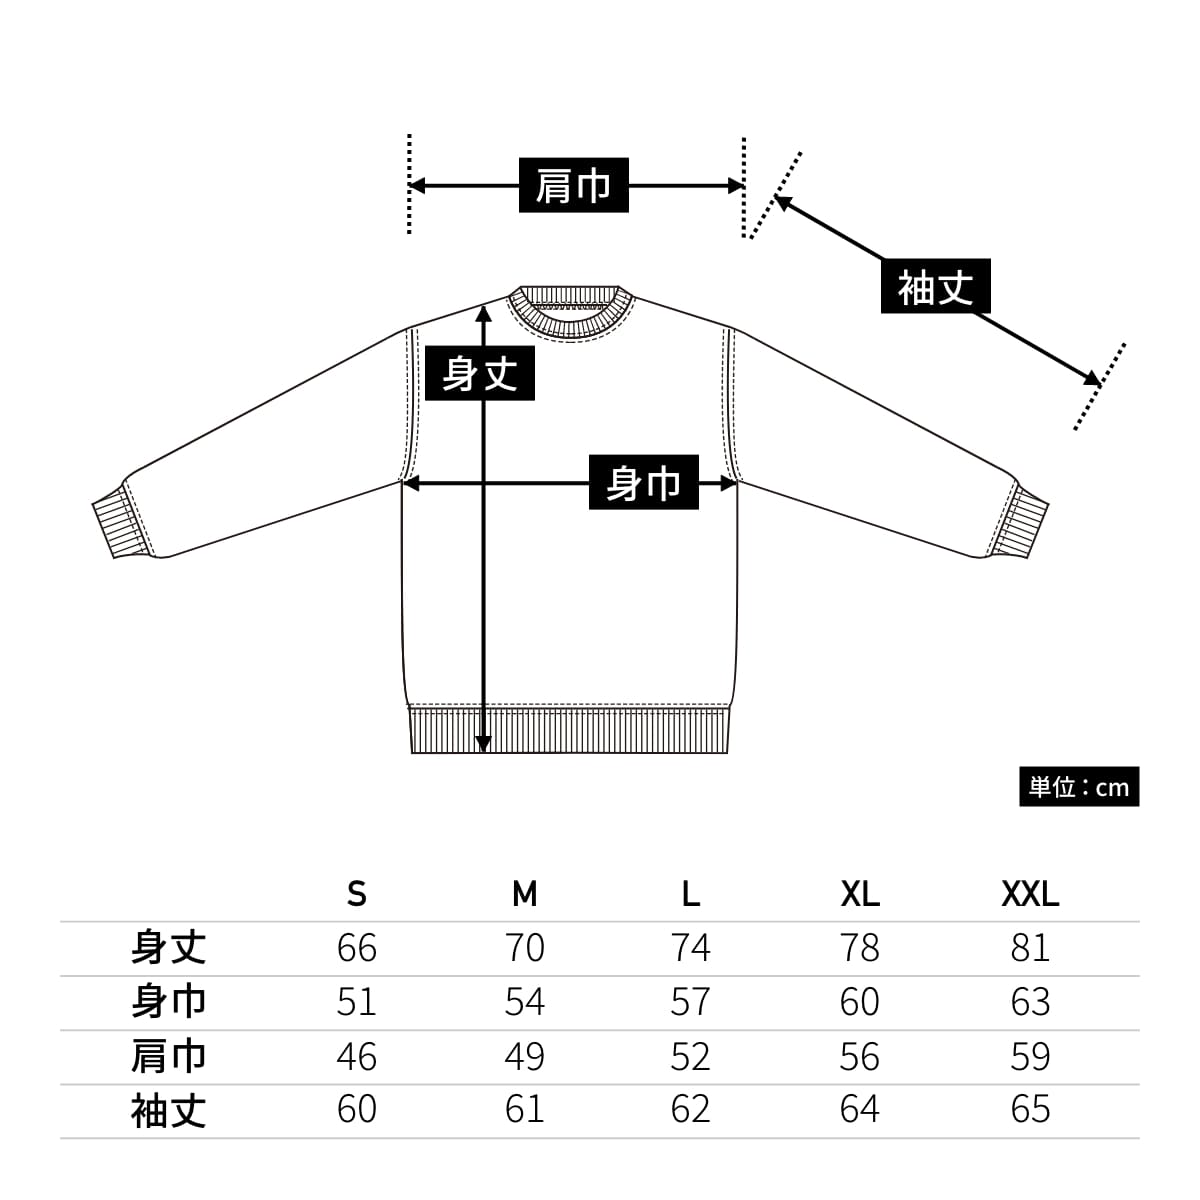 6.2オンス プレミアム ロングスリーブ Tシャツ（2.1インチリブ） | メンズ | 1枚 | 5913-01 | アッシュ